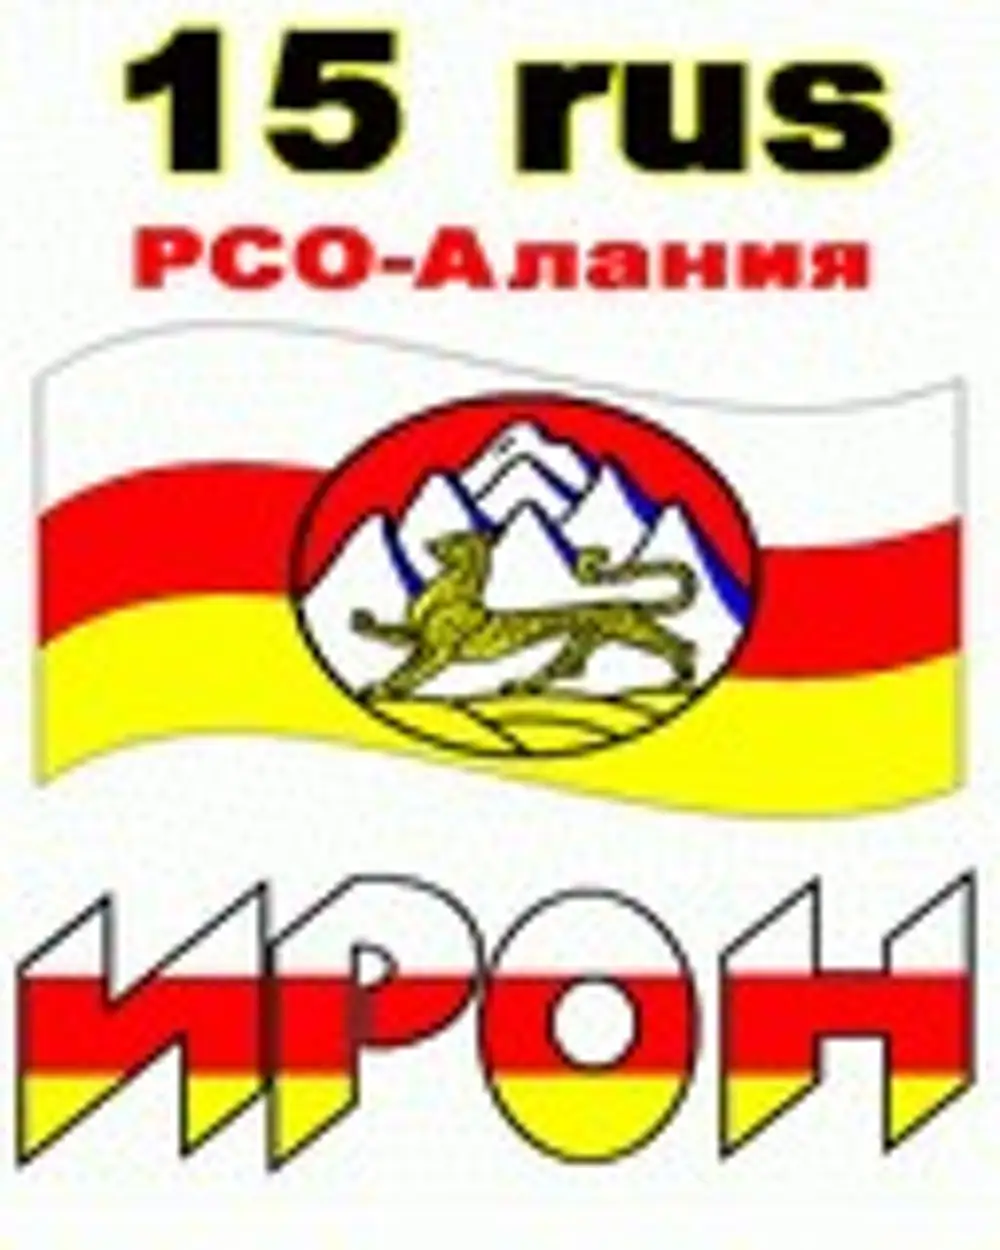 Осетинский флаг и надпись